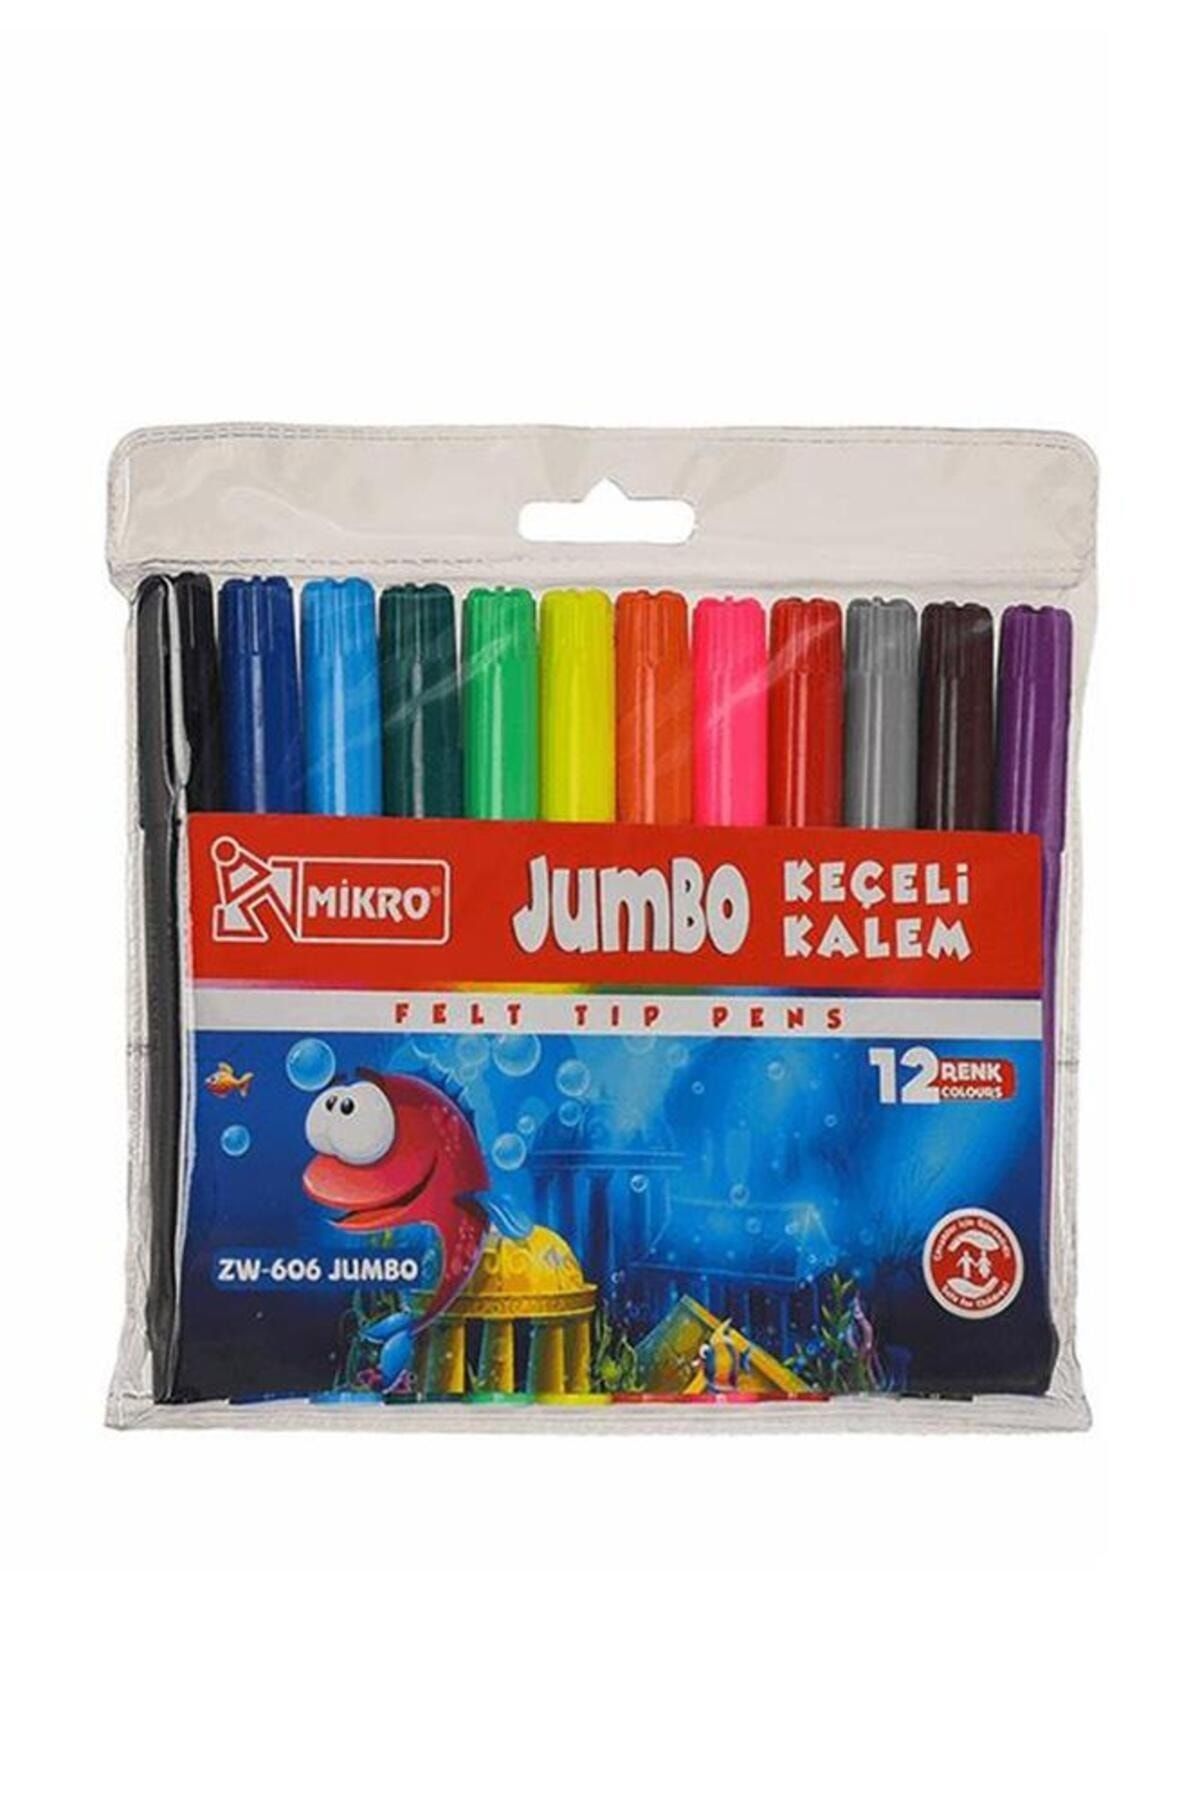 Mikro Jumbo Keçeli Kalem 12 Renk 1 Paket 12 li Jumbo Keçeli Kalem 1 Adet Su Bazlı Canlı Renkler